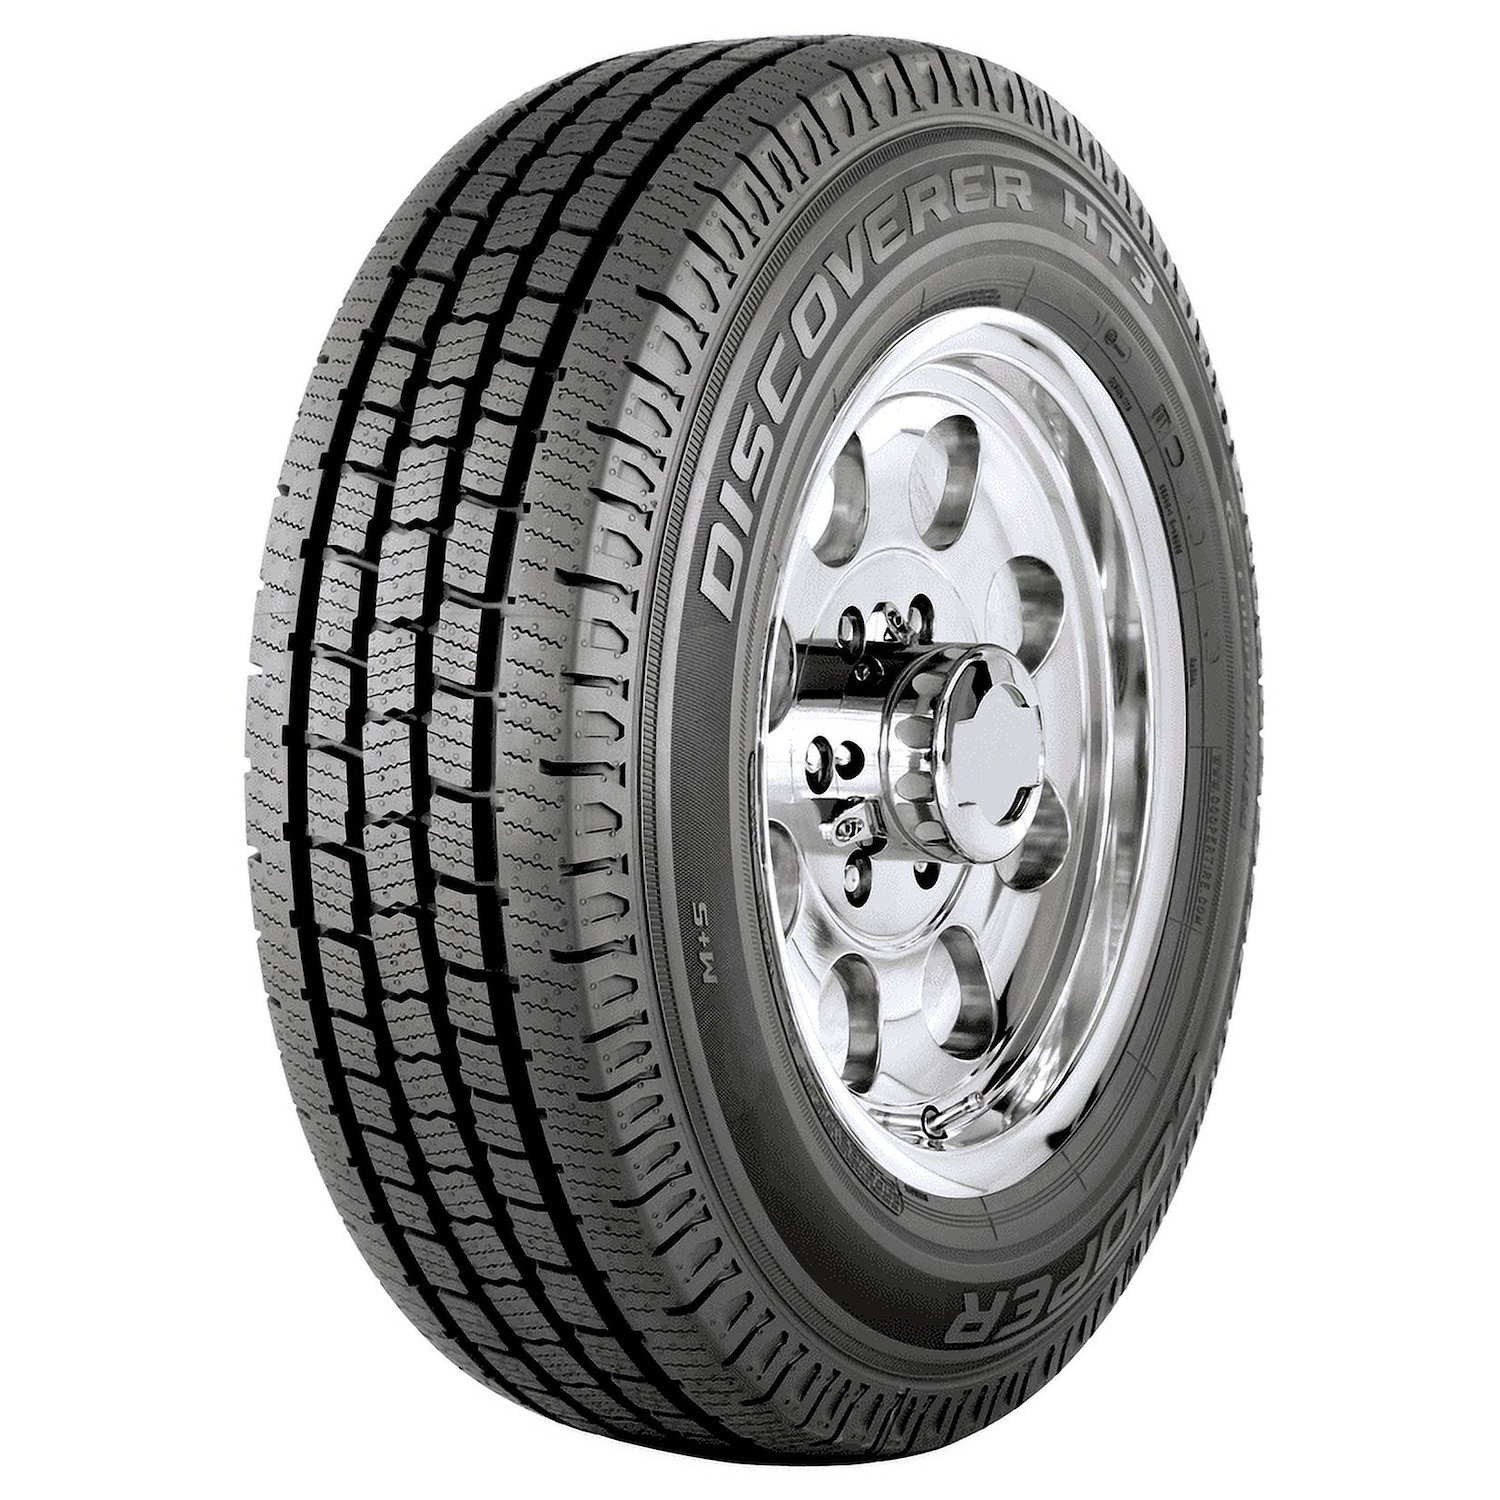 Discoverer HT3 All-Terrain Tire, LT215/85R16